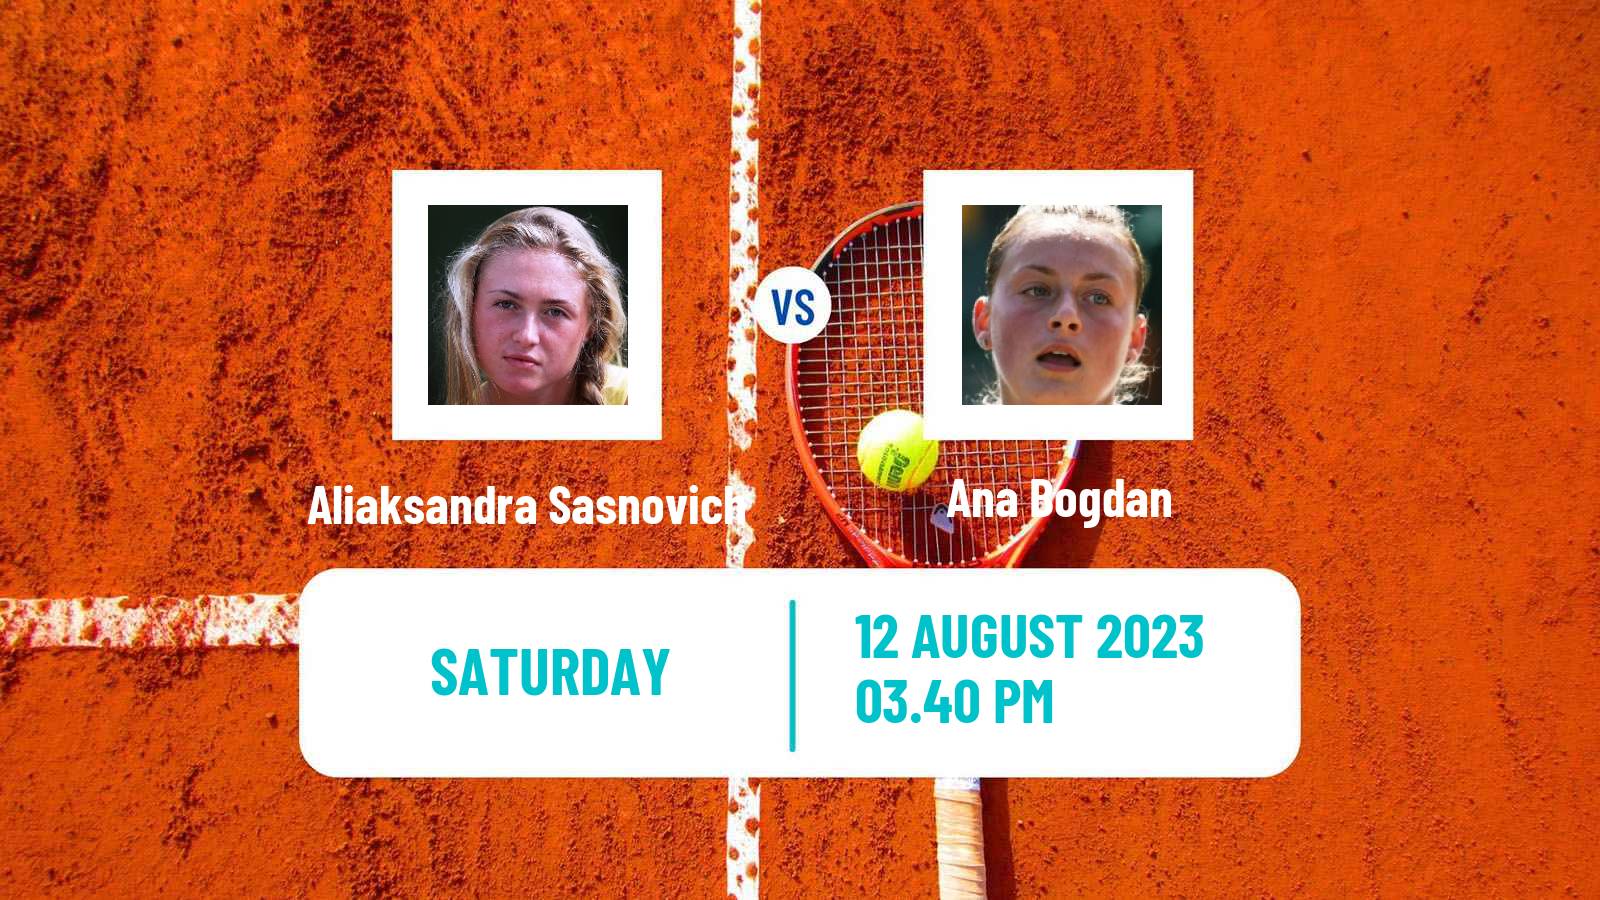 Tennis WTA Cincinnati Aliaksandra Sasnovich - Ana Bogdan